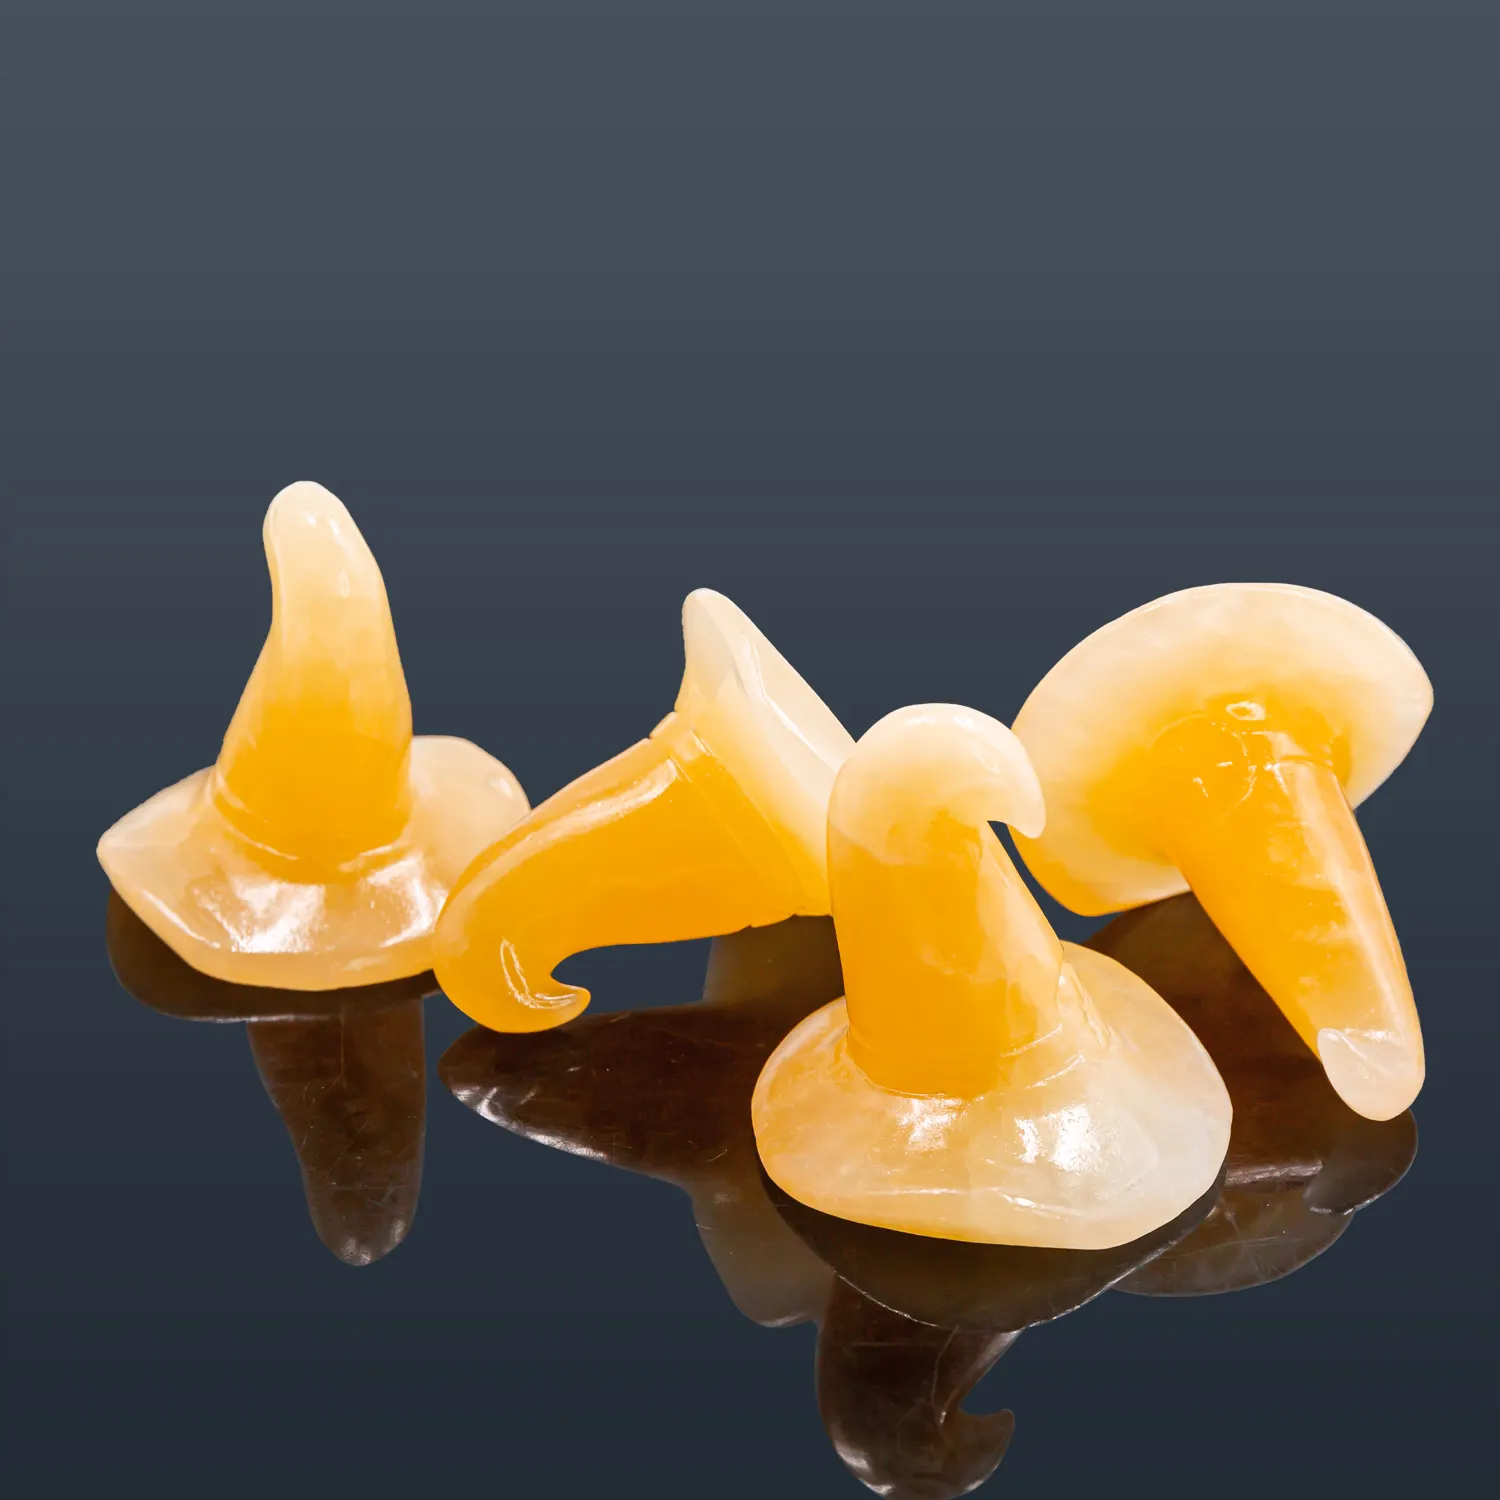 Commercio all'ingrosso naturale intagliato a mano arancione Calcite strega cappello cappello artigianato Folk intaglio di cristallo per Halloween giocattoli per bambini